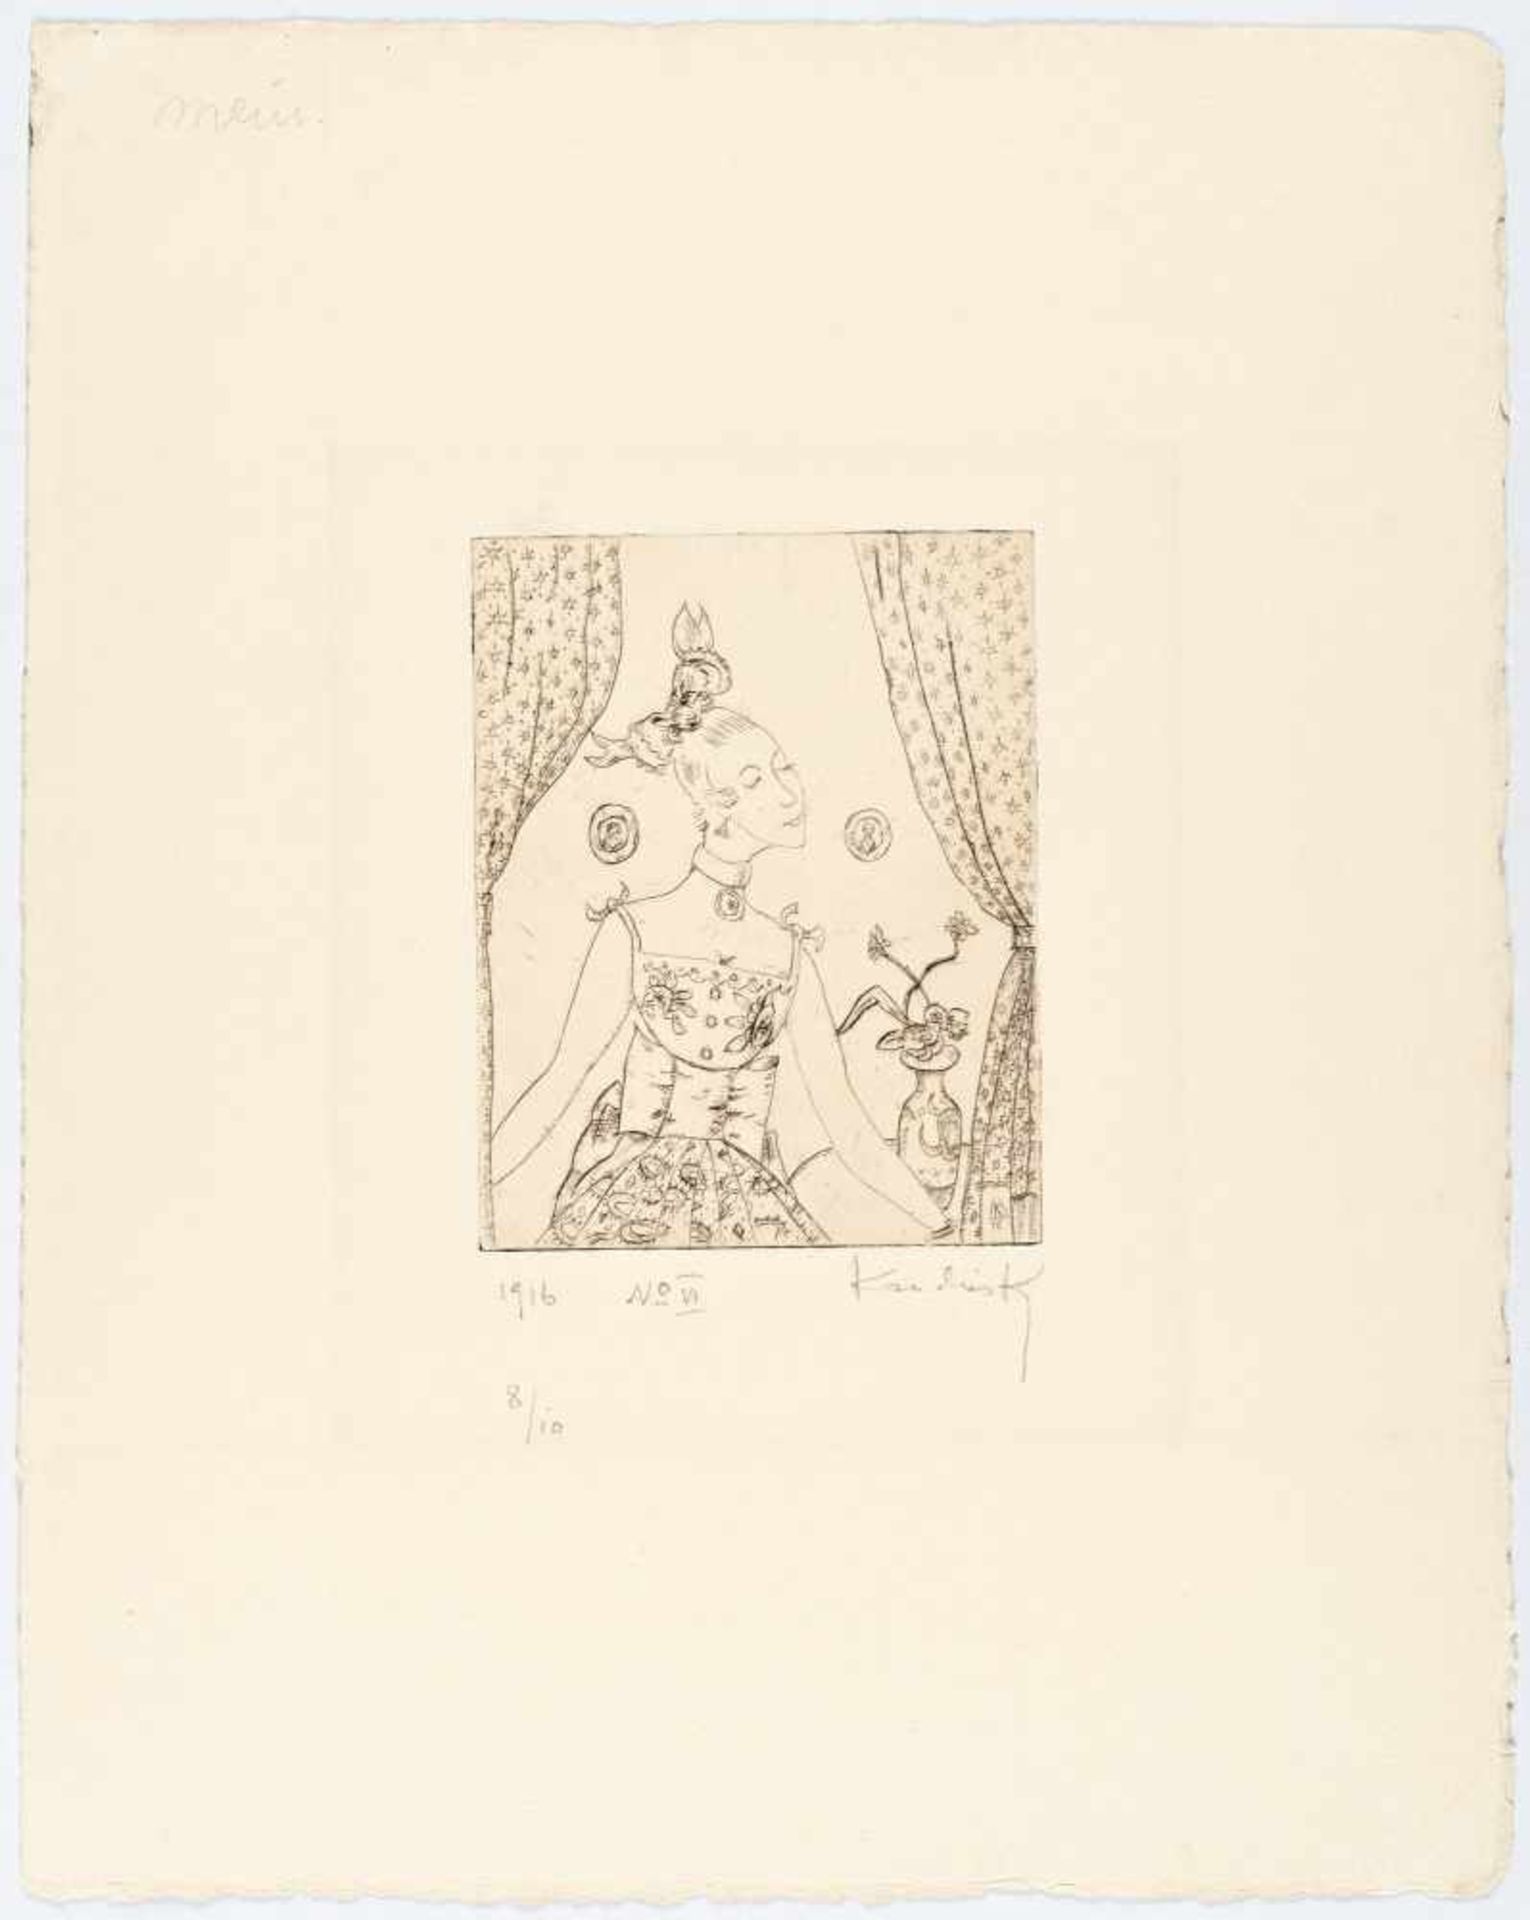 Wassily KandinskyRadierung 1916 „No. VI“Radierung auf chamoisfarbenem, leicht strukturierte - Bild 2 aus 3